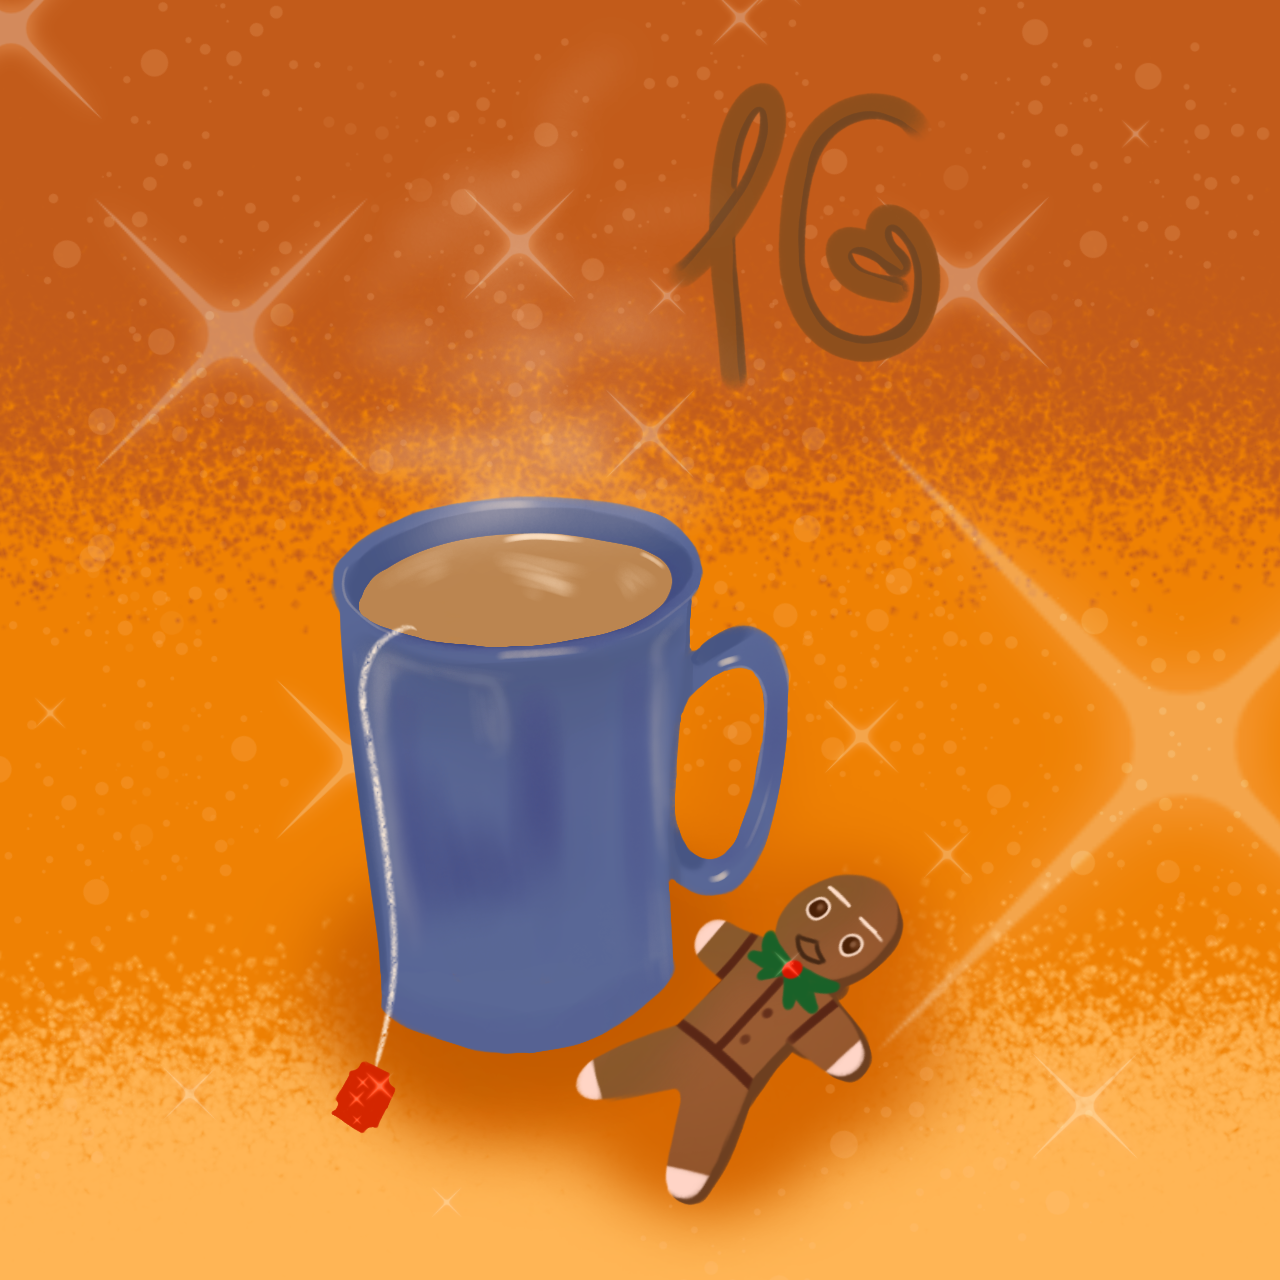 Ein orangener Hintergrund mit einer Kaffeetasse. Daneben liegt ein Lebkuchen-Männchen. Darüber ist die Nummer 16 zu sehen.